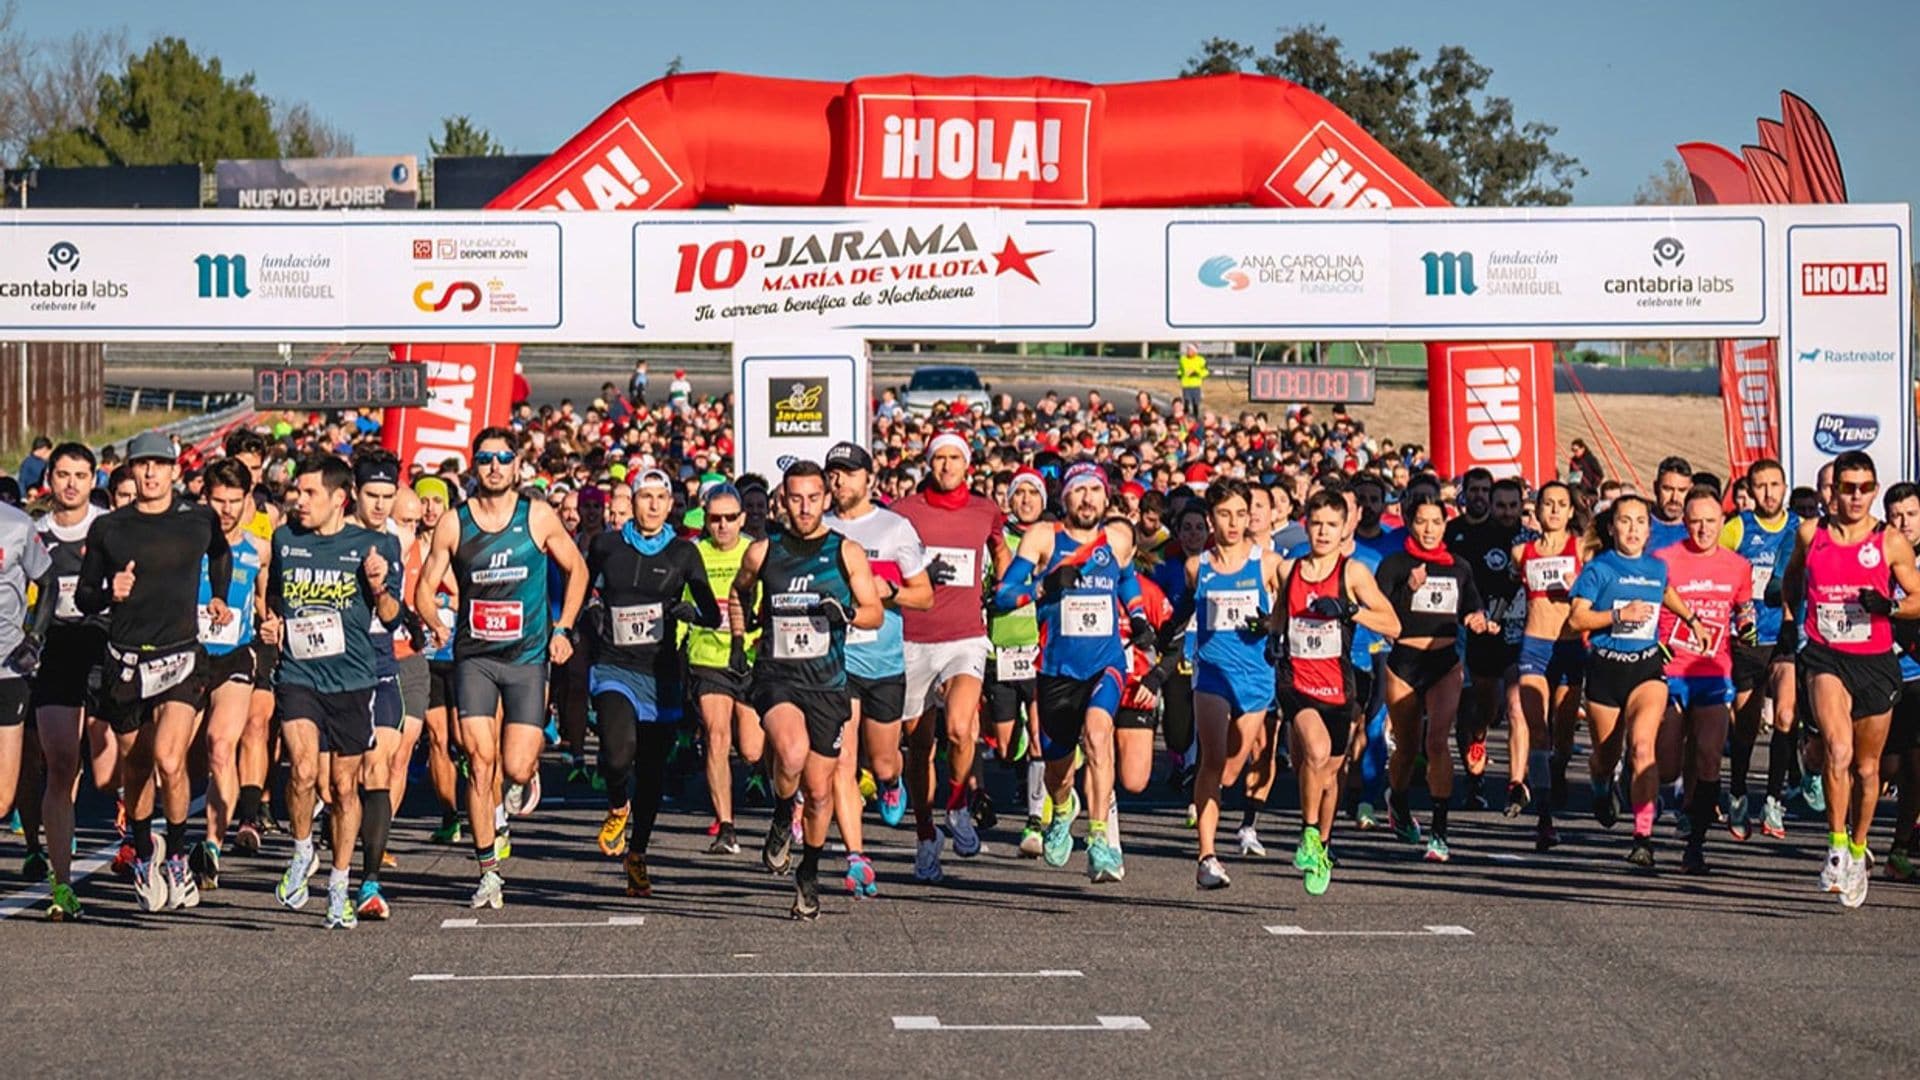 Más de 2.000 corredores participan en la carrera benéfica María de Villota en el Jarama